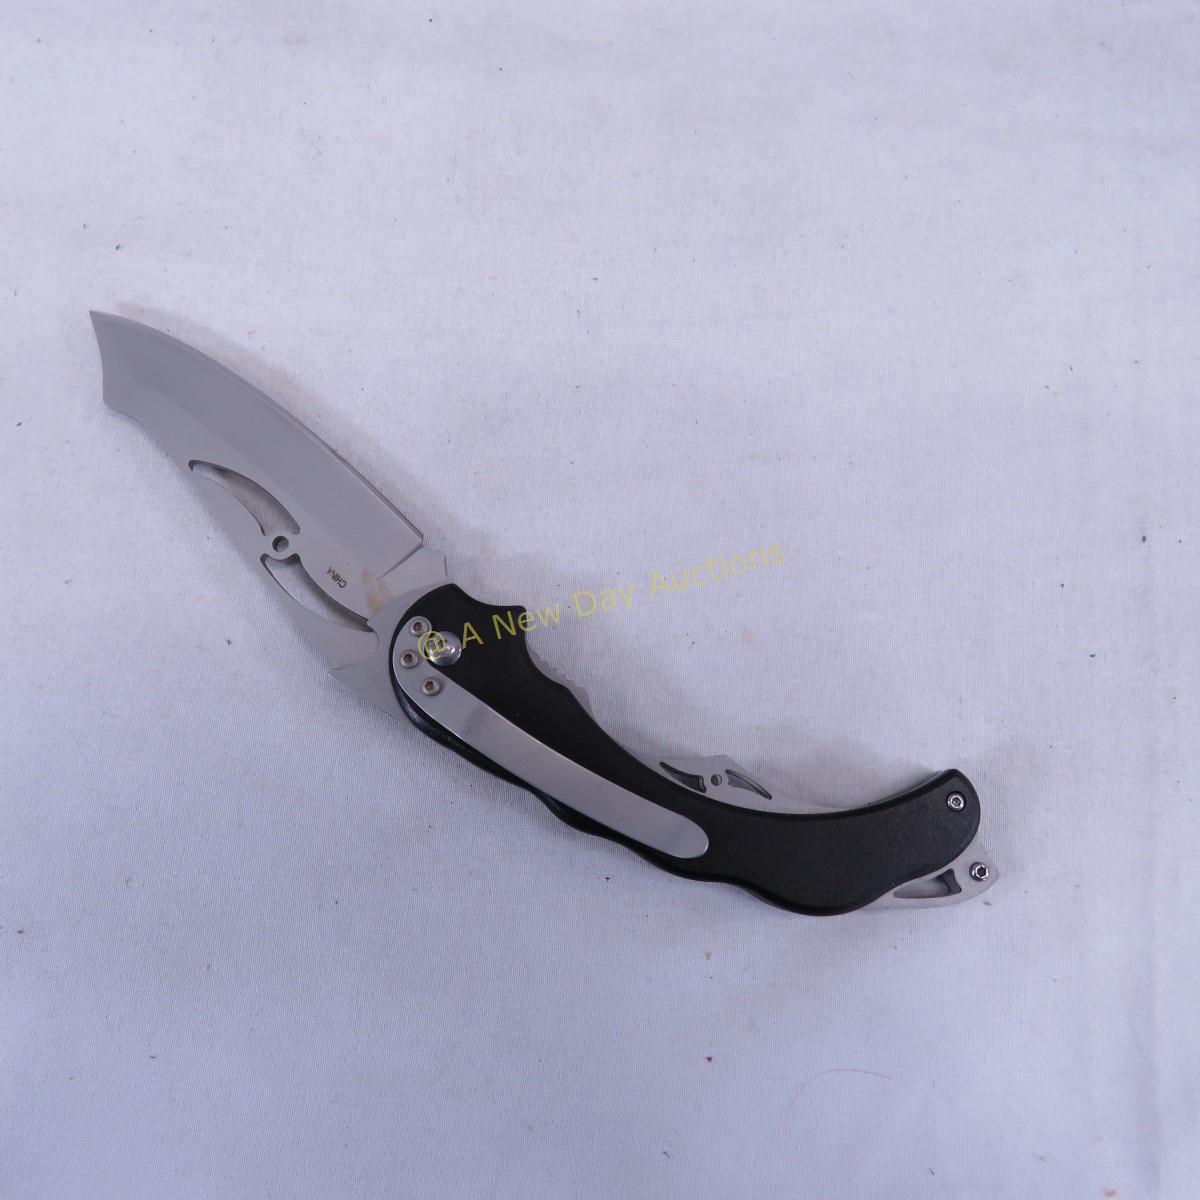 Fantasy, pocket, & fixed blade knives